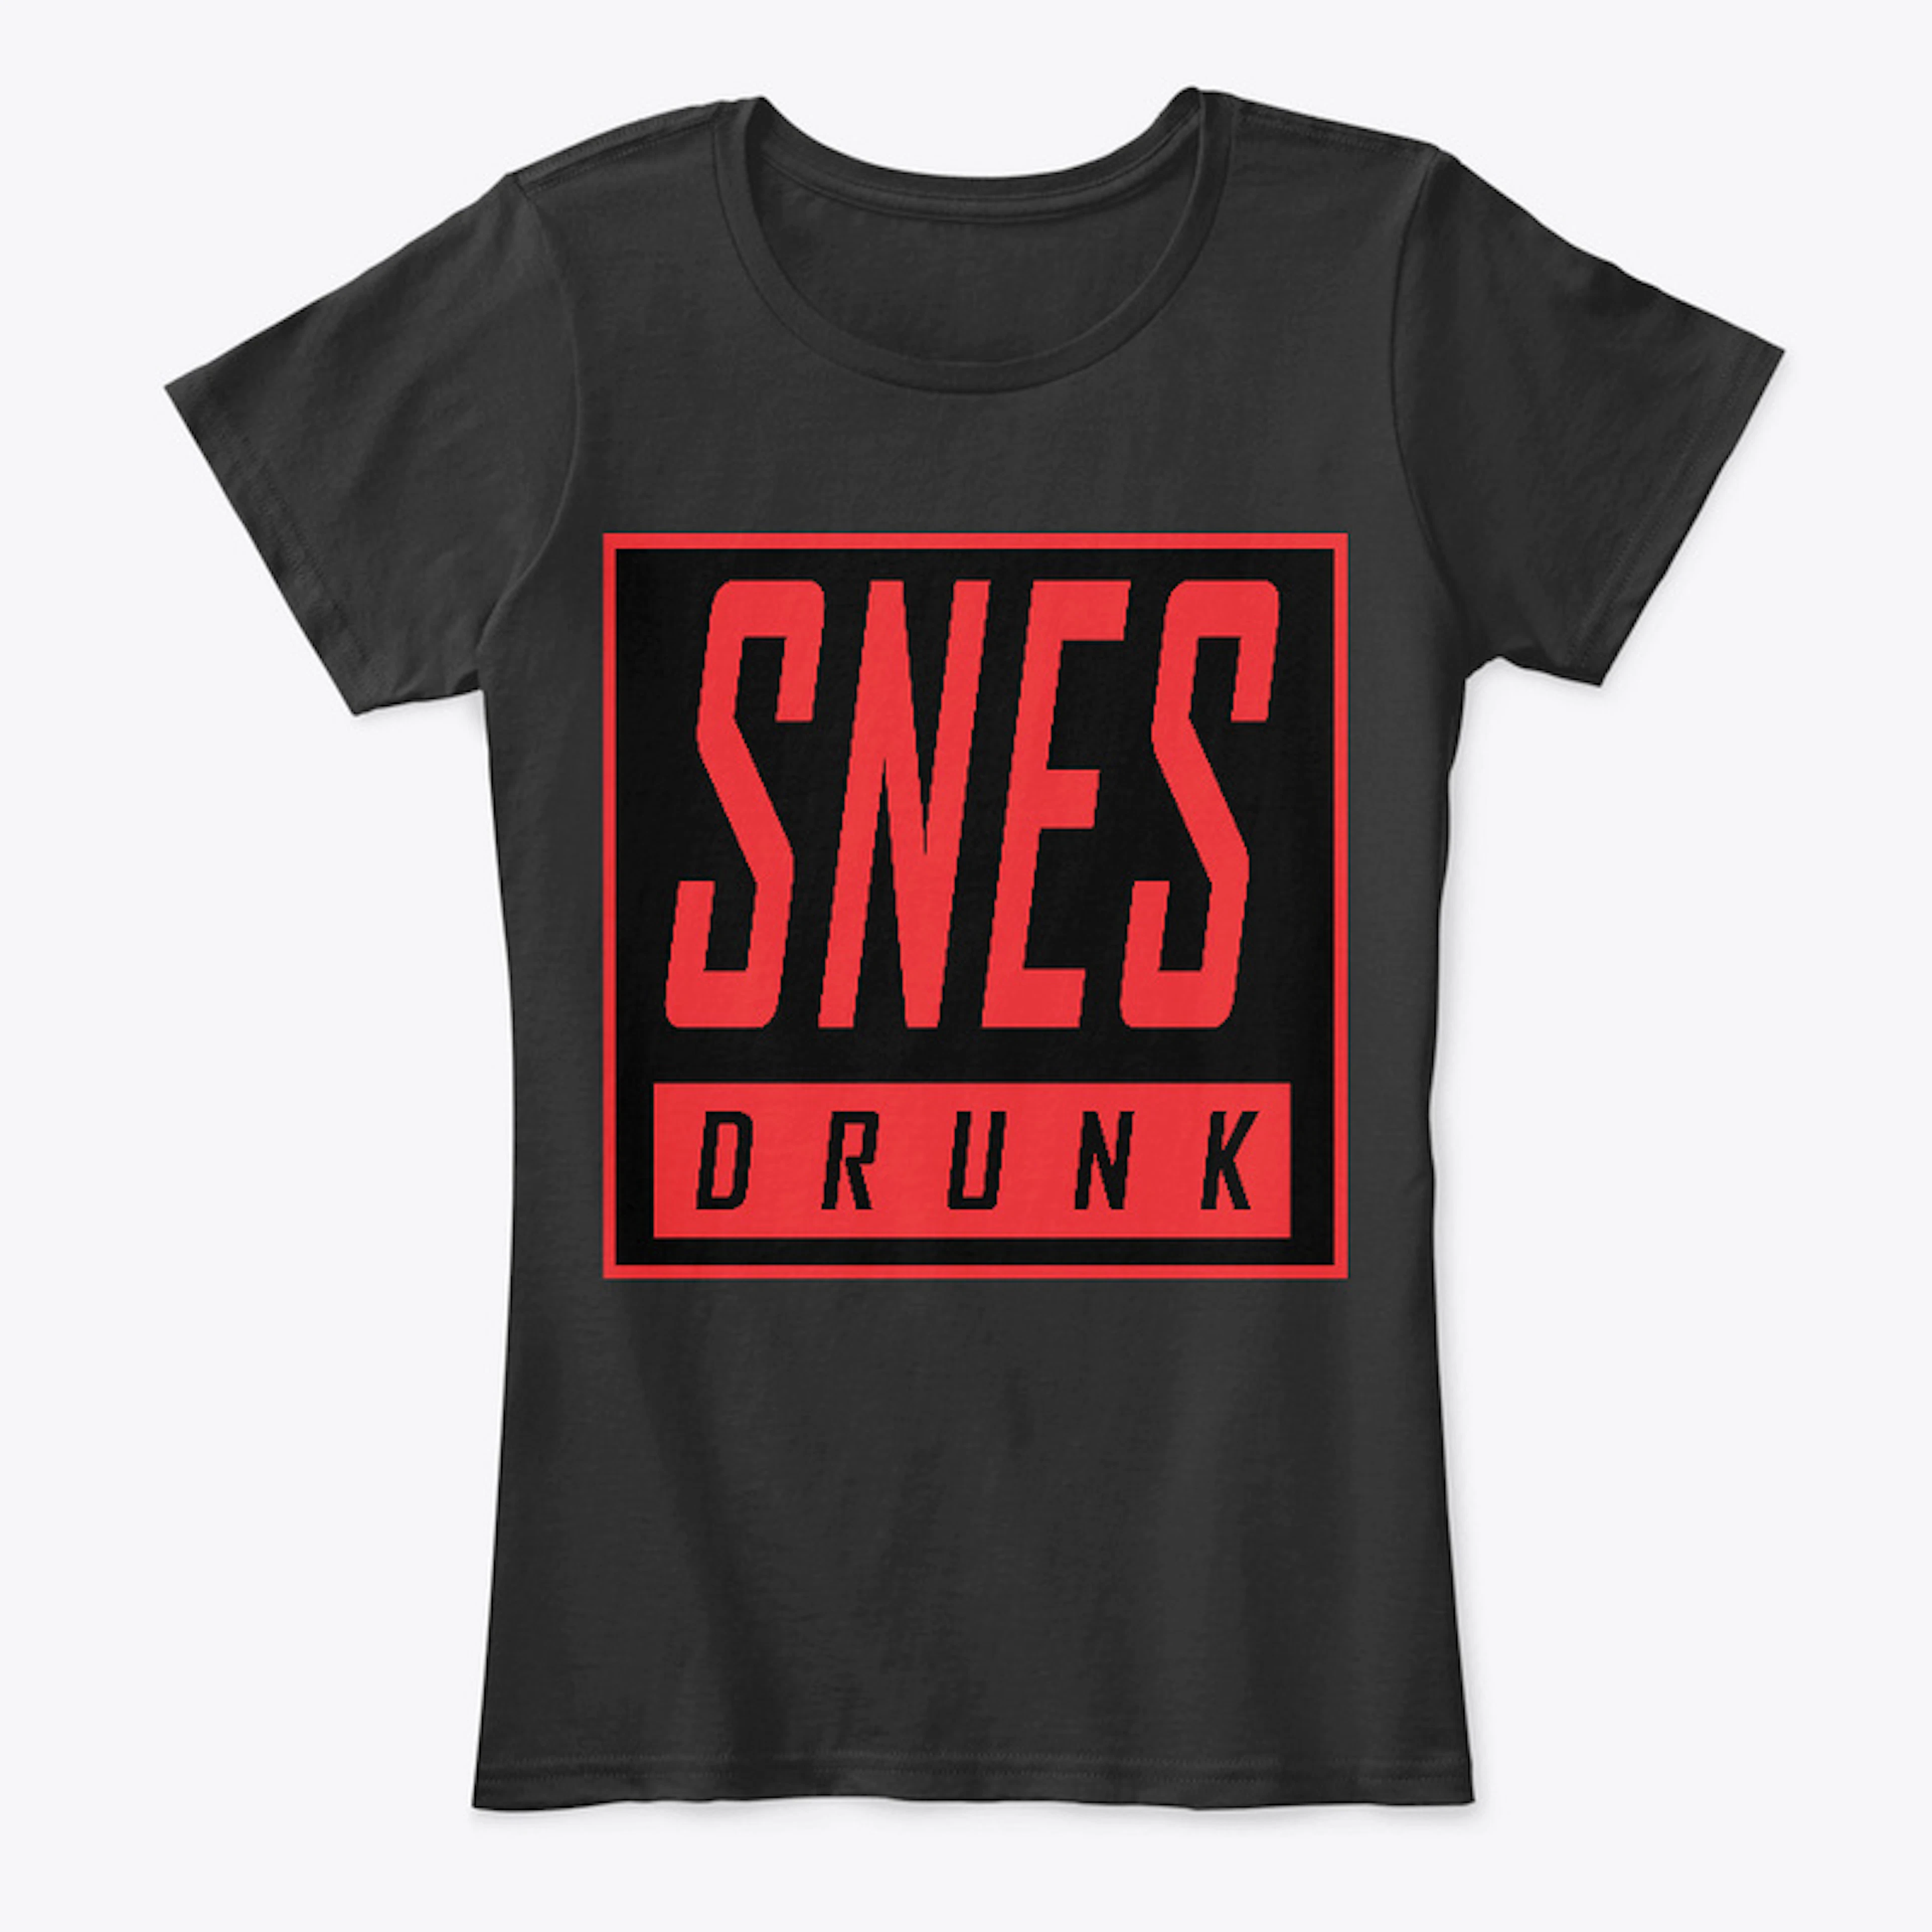 SNESdrunk T-Shirt, Women's